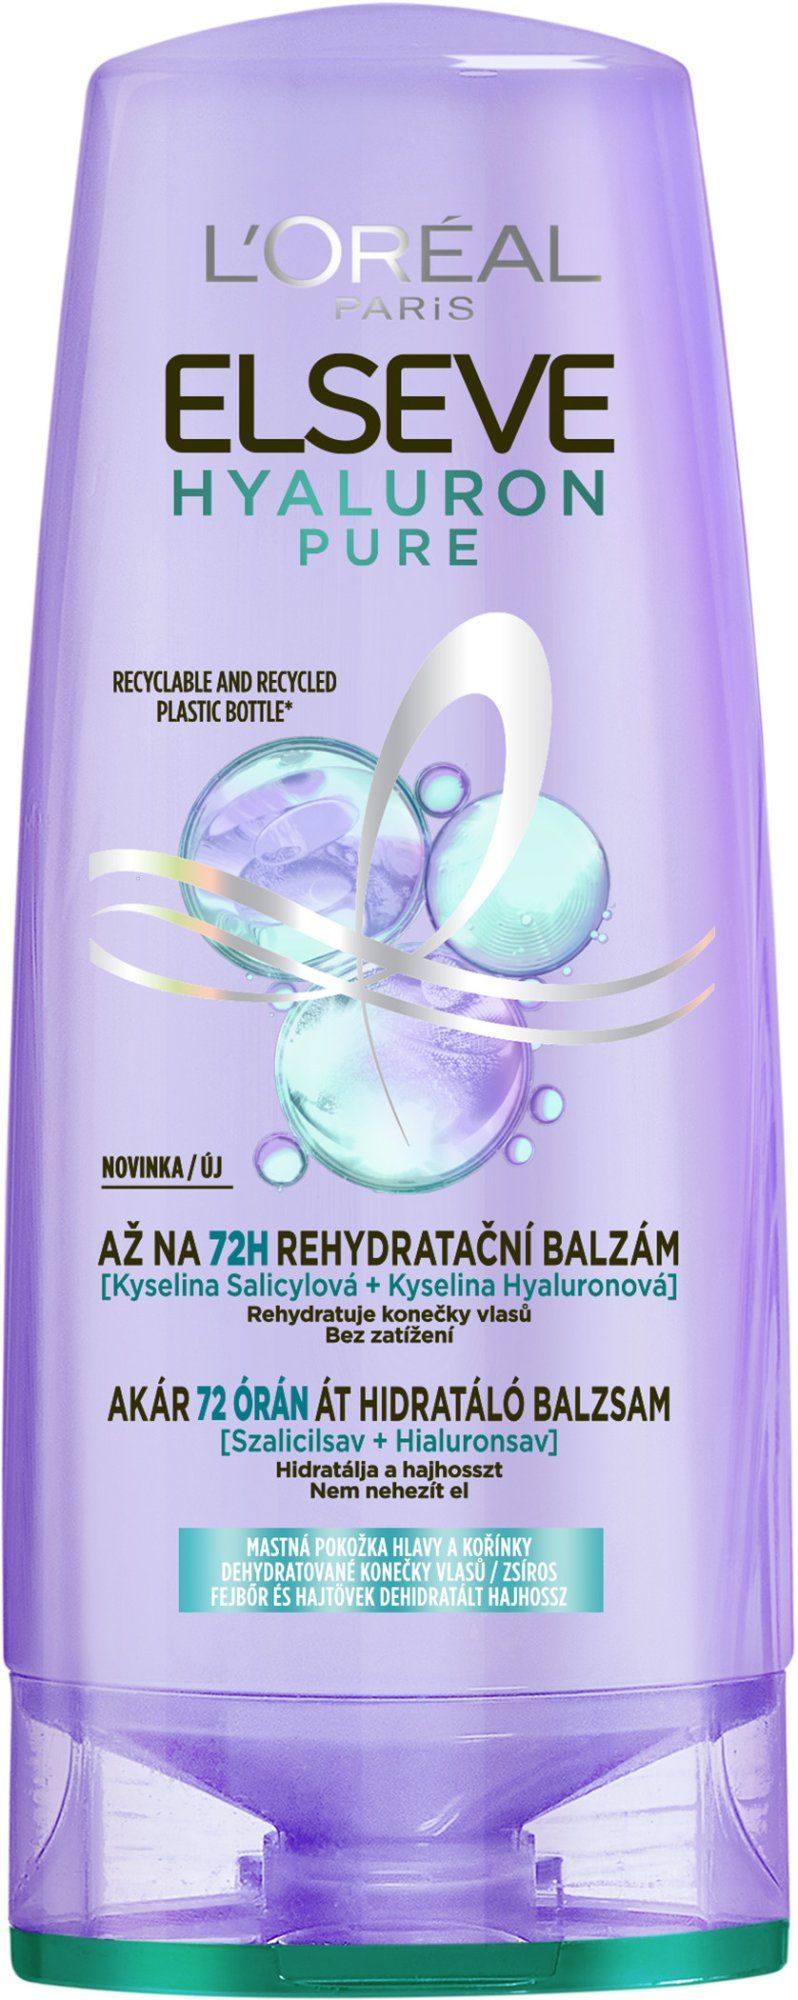 L'Oréal Paris Elseve Hyaluron Pure balzám, 300 ml